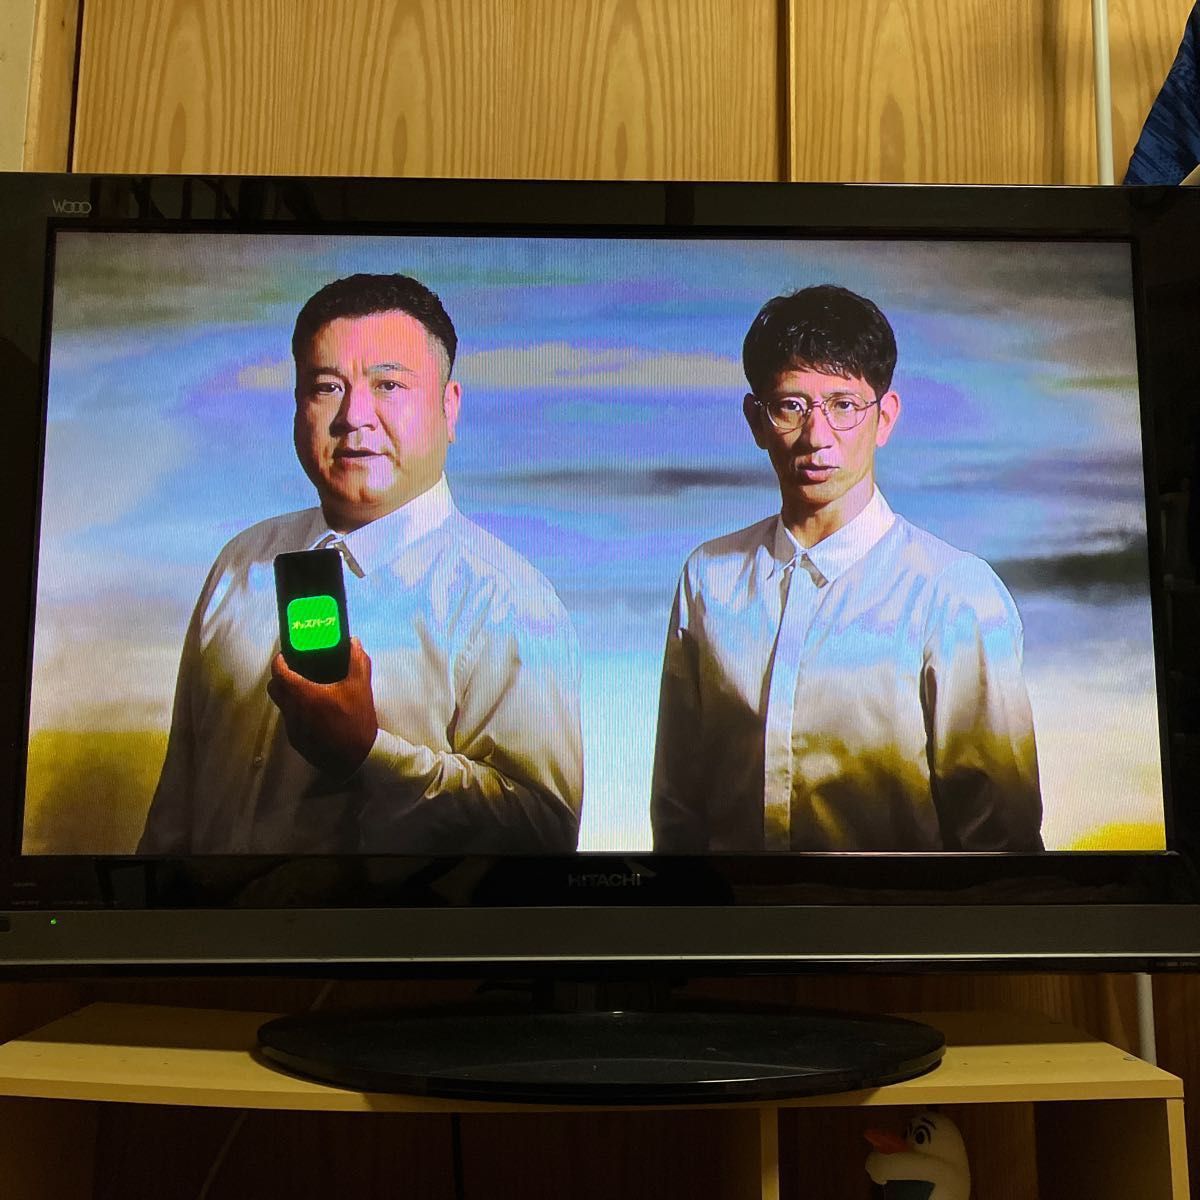 録画可能】HITACHI WOOO 42インチ プラズマテレビ リモコン付き HDD録画-